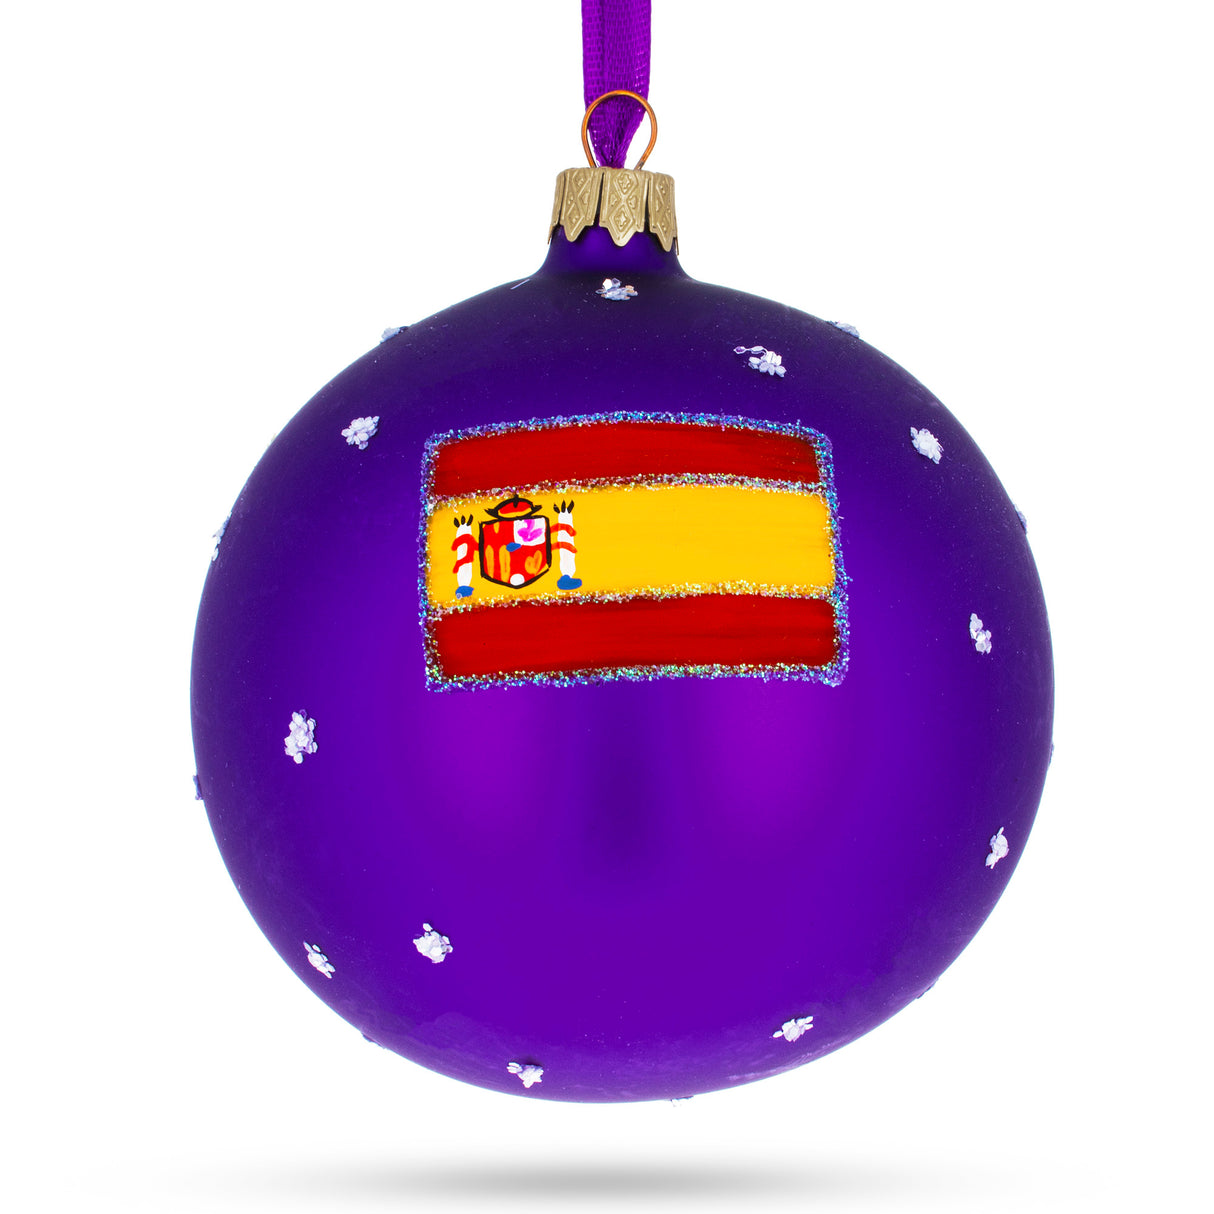 Buy Christmas Ornaments > Travel > Europe > Spain by BestPysanky Online Gift Ship